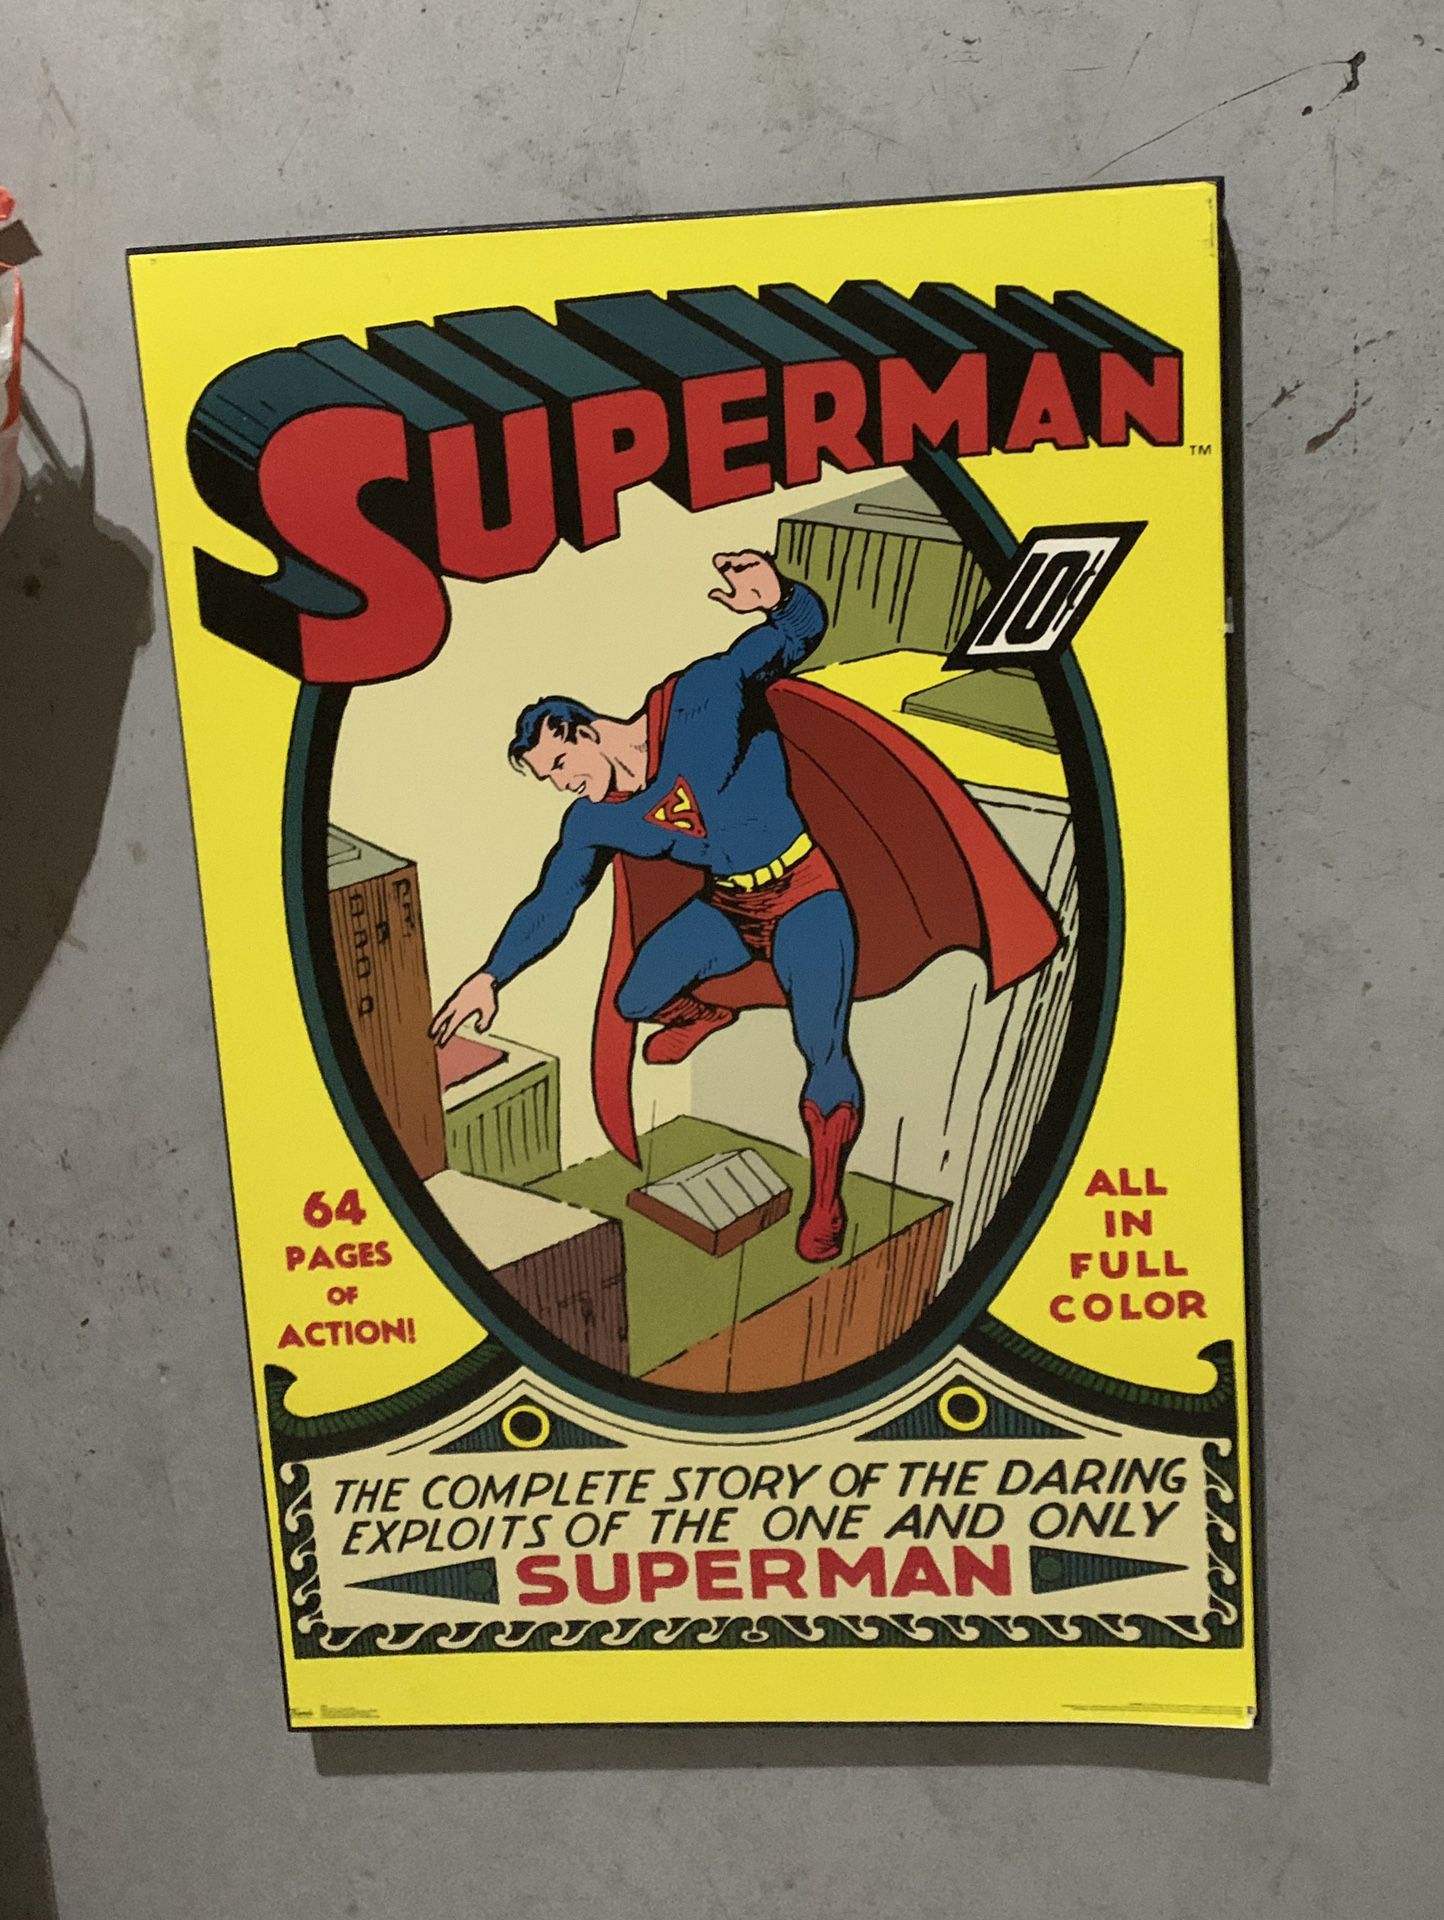 Big superman poster